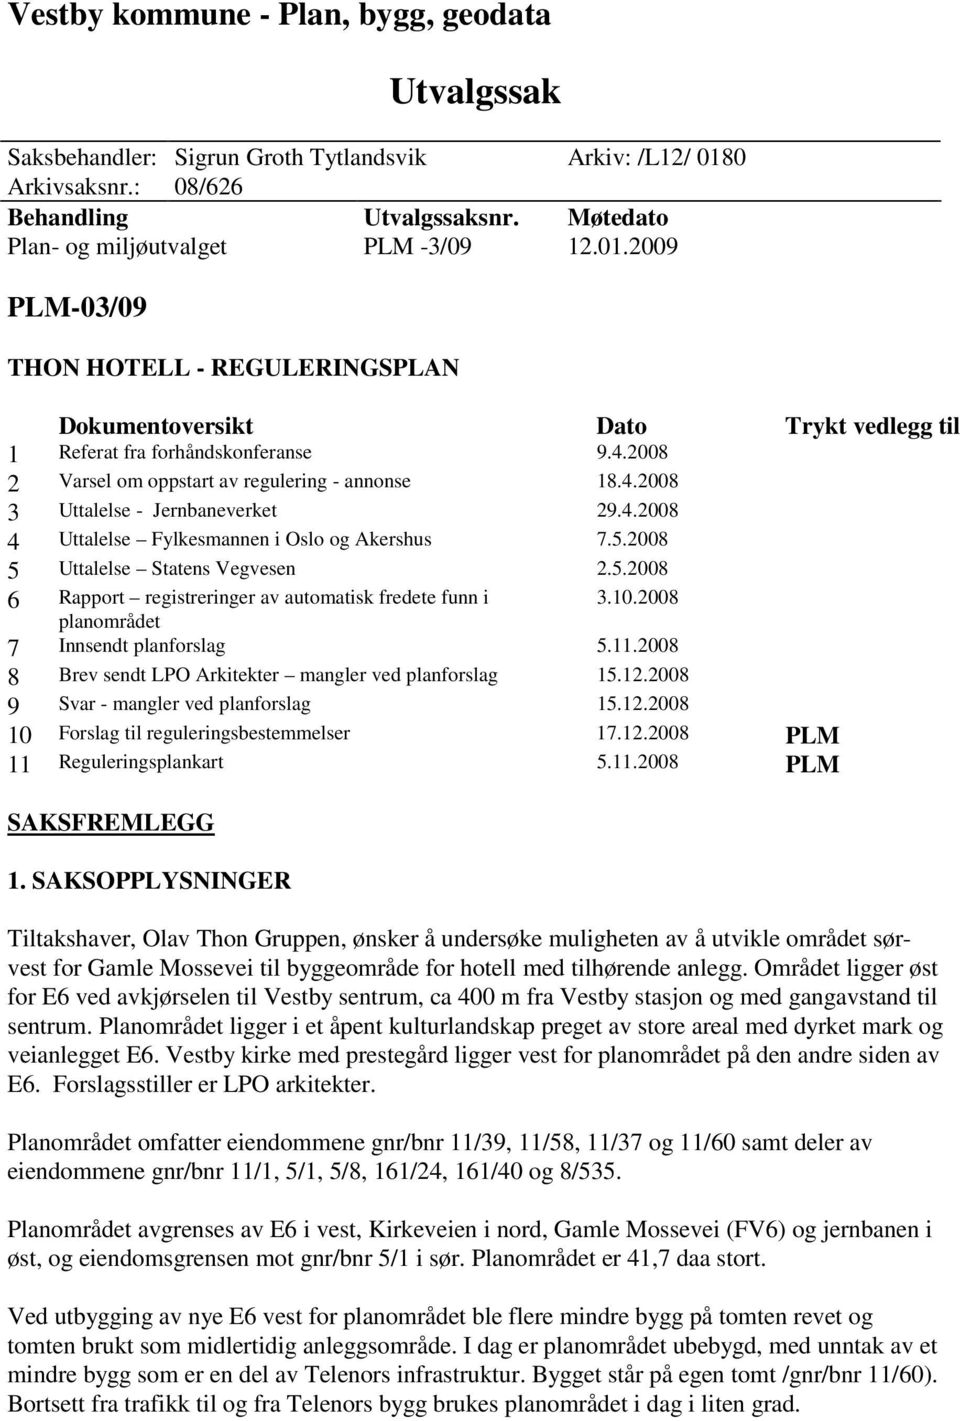 4.2008 4 Uttalelse Fylkesmannen i Oslo og Akershus 7.5.2008 5 Uttalelse Statens Vegvesen 2.5.2008 6 Rapport registreringer av automatisk fredete funn i planområdet 3.10.2008 7 Innsendt planforslag 5.